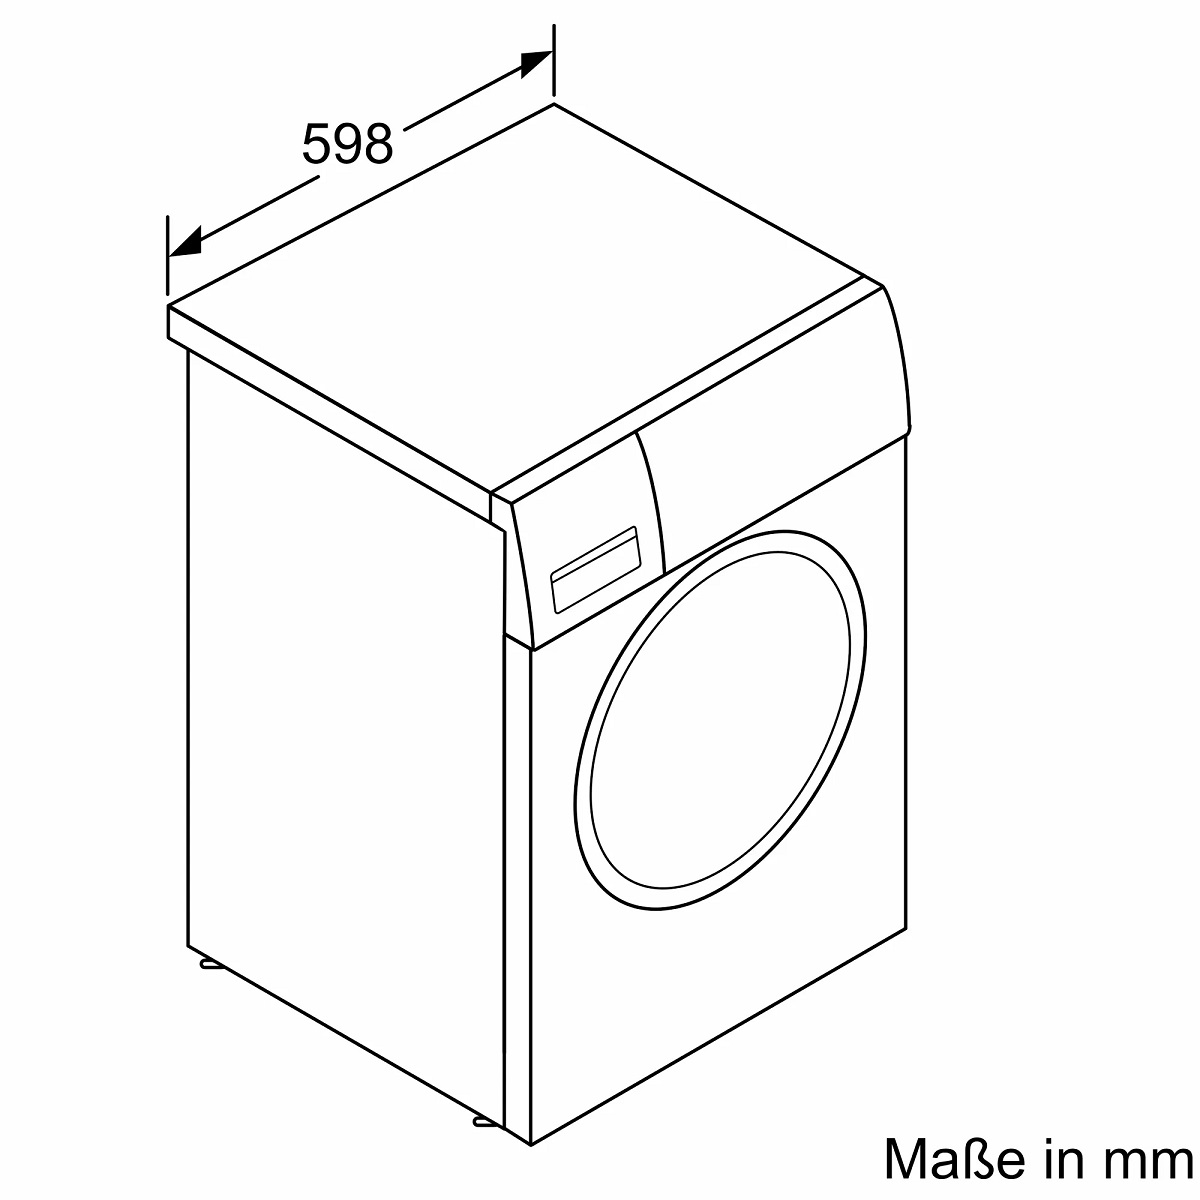 Bosch Waschmaschine Exclusiv Frontlader 9 kg WGG144090